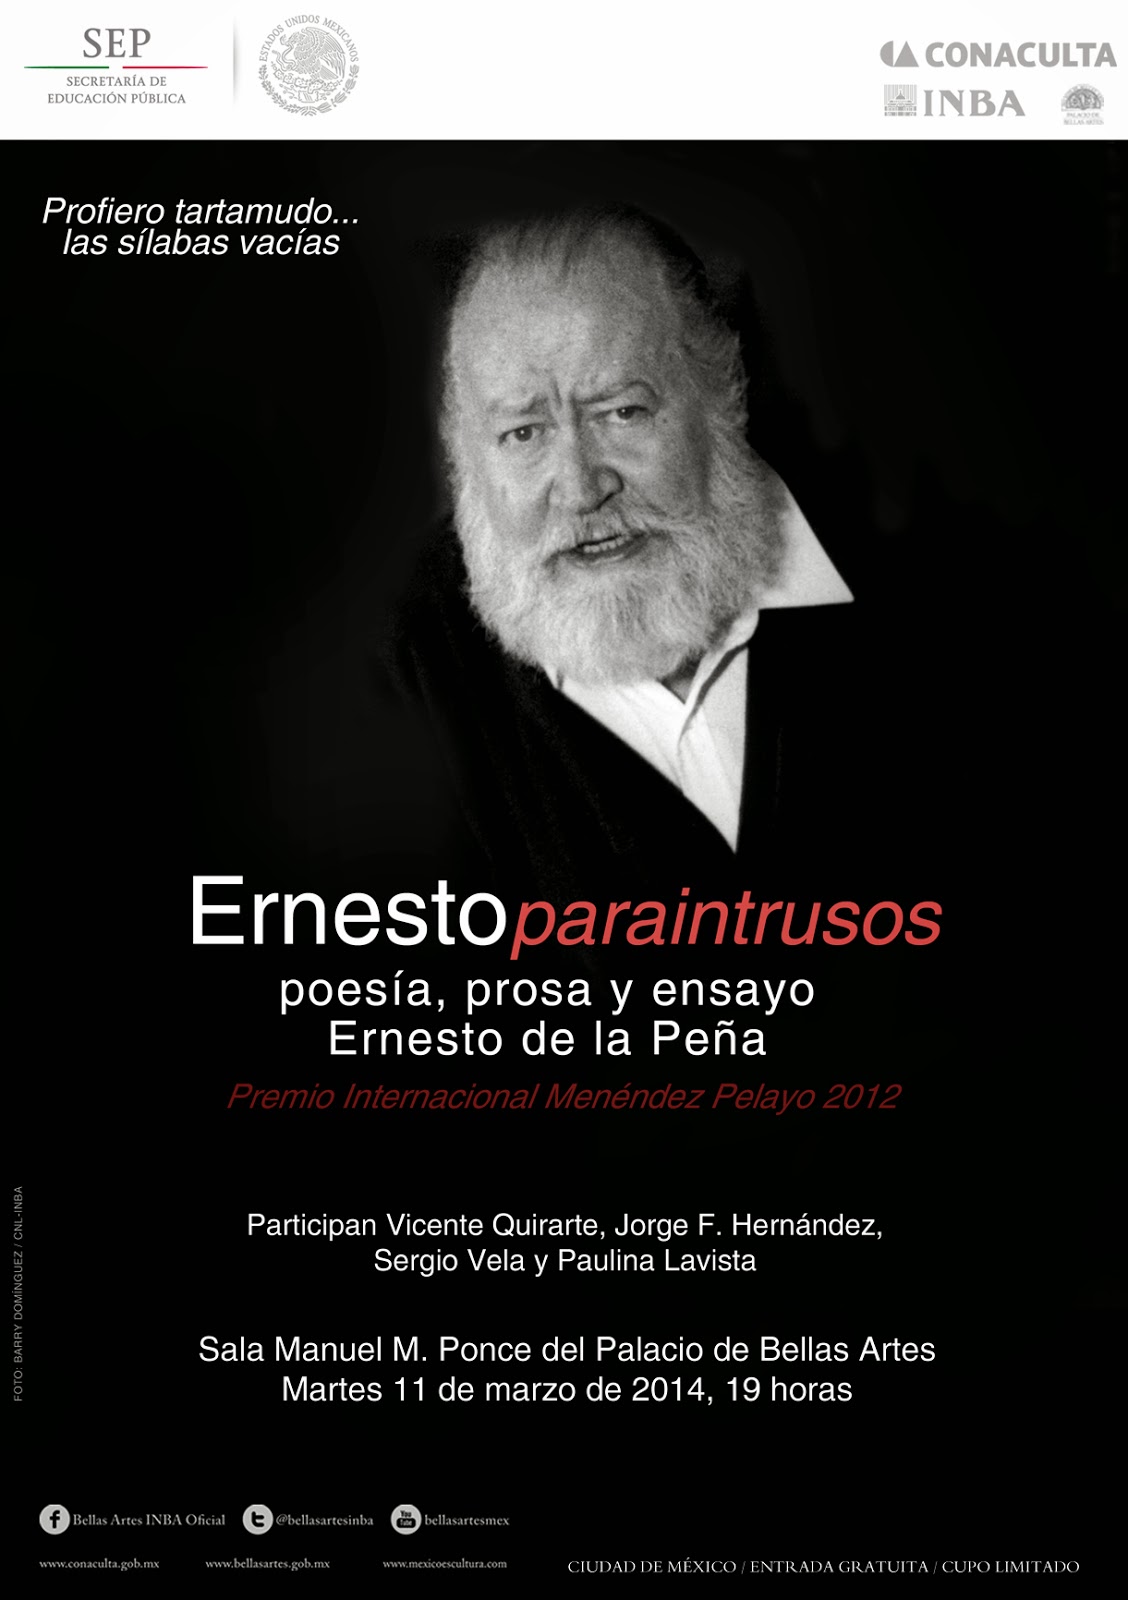 Recuerdan a Ernesto de la Peña en el Palacio de Bellas Artes